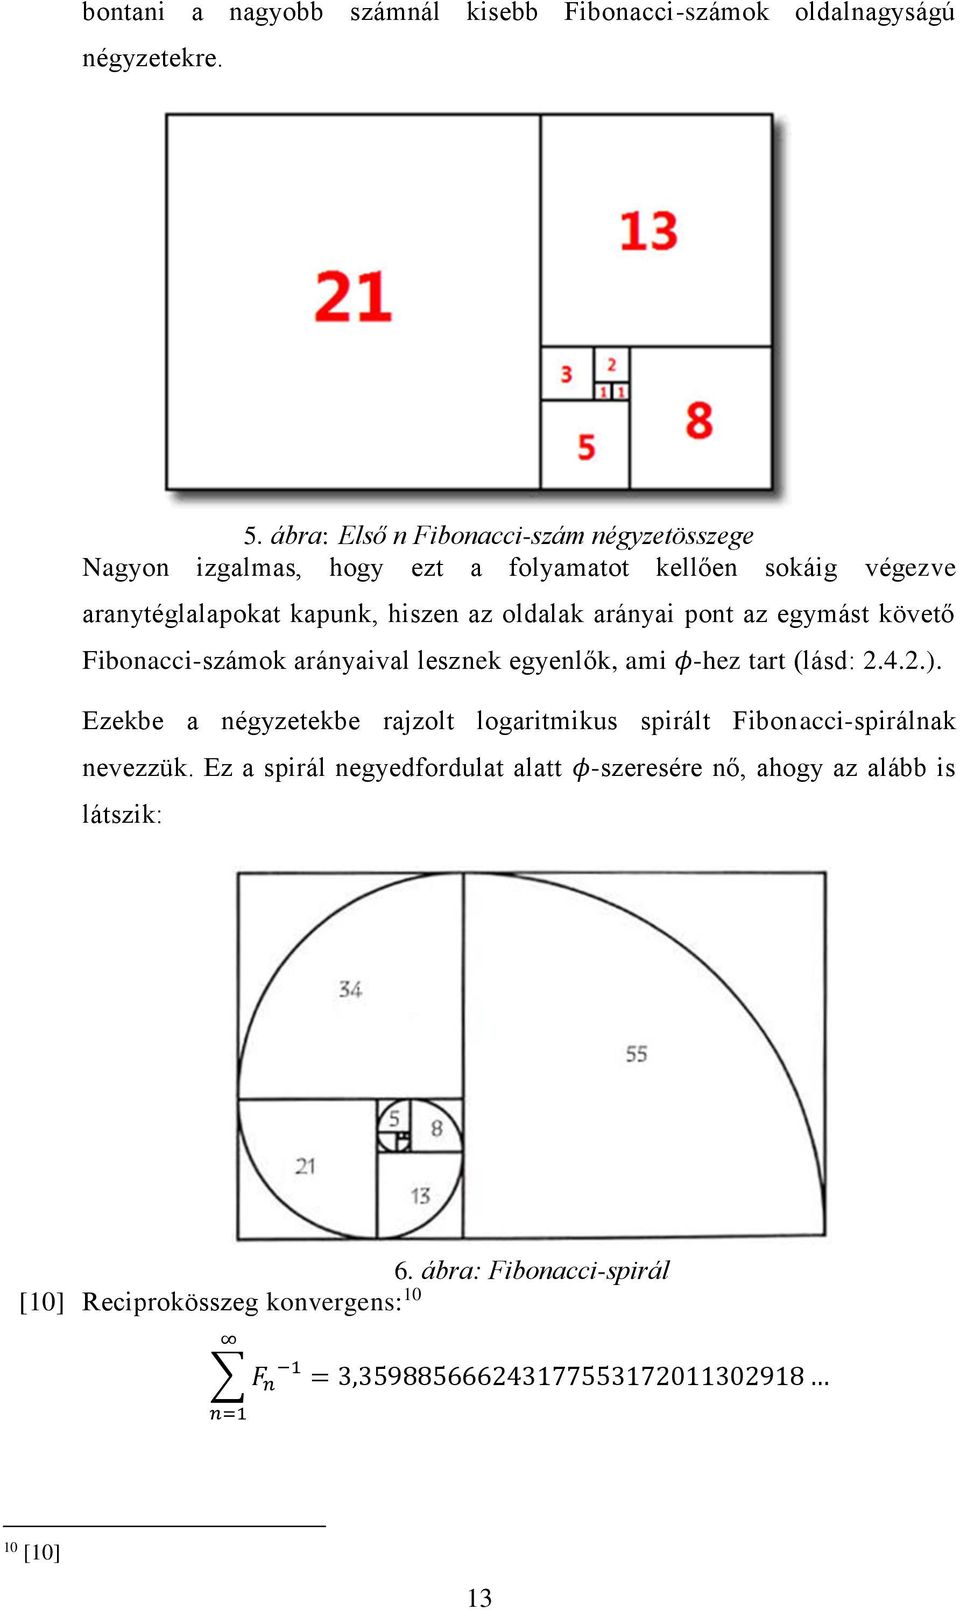 fibonacci kiterjesztések és javítások